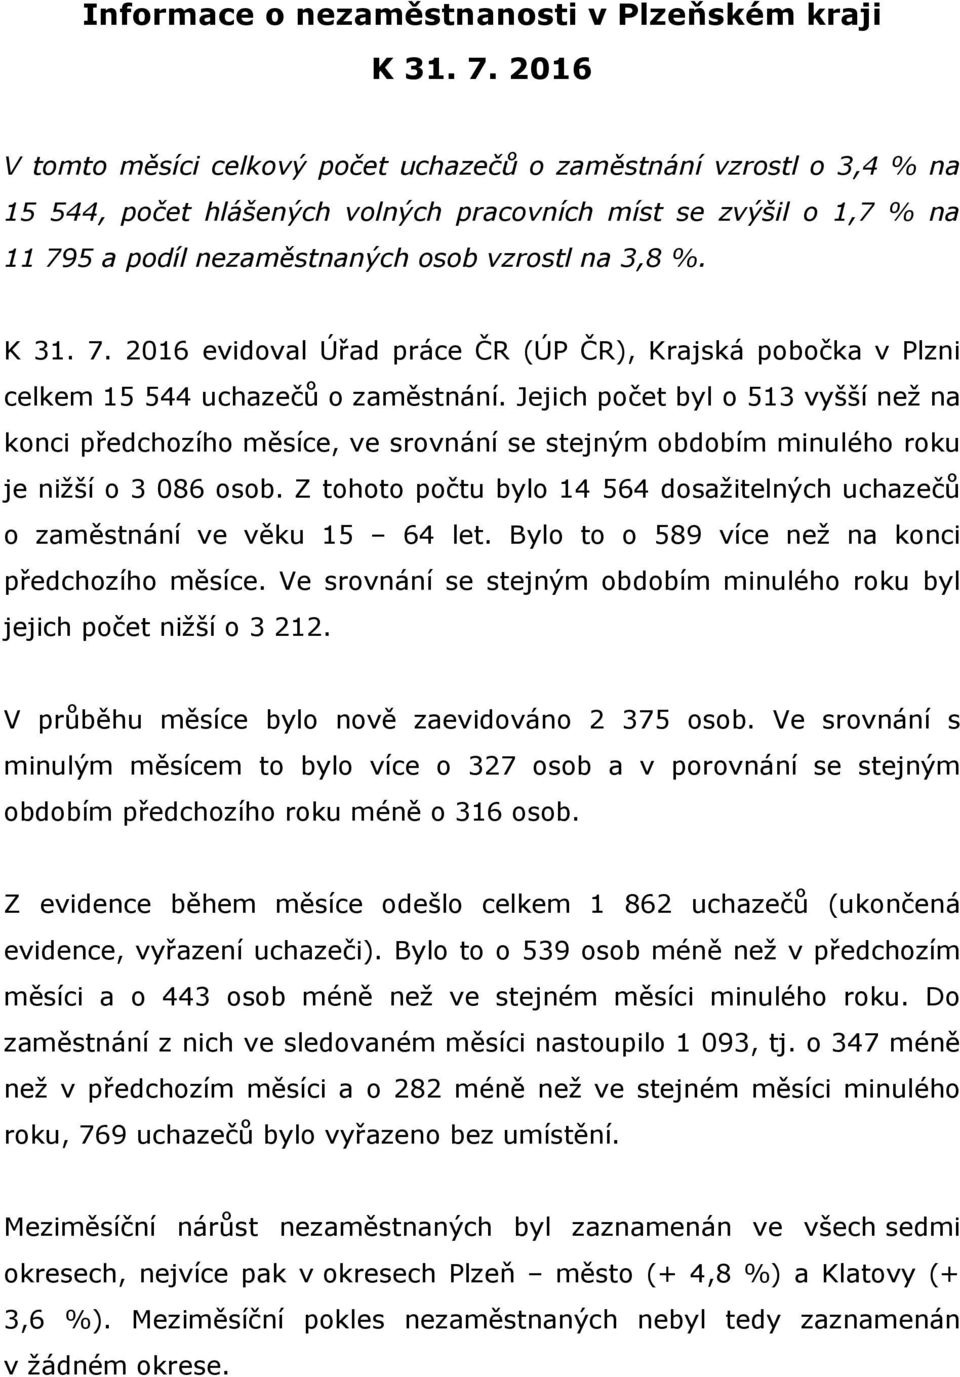 K 31. 7. 2016 evidoval Úřad práce ČR (ÚP ČR), Krajská pobočka v Plzni celkem 15 544 uchazečů o zaměstnání.